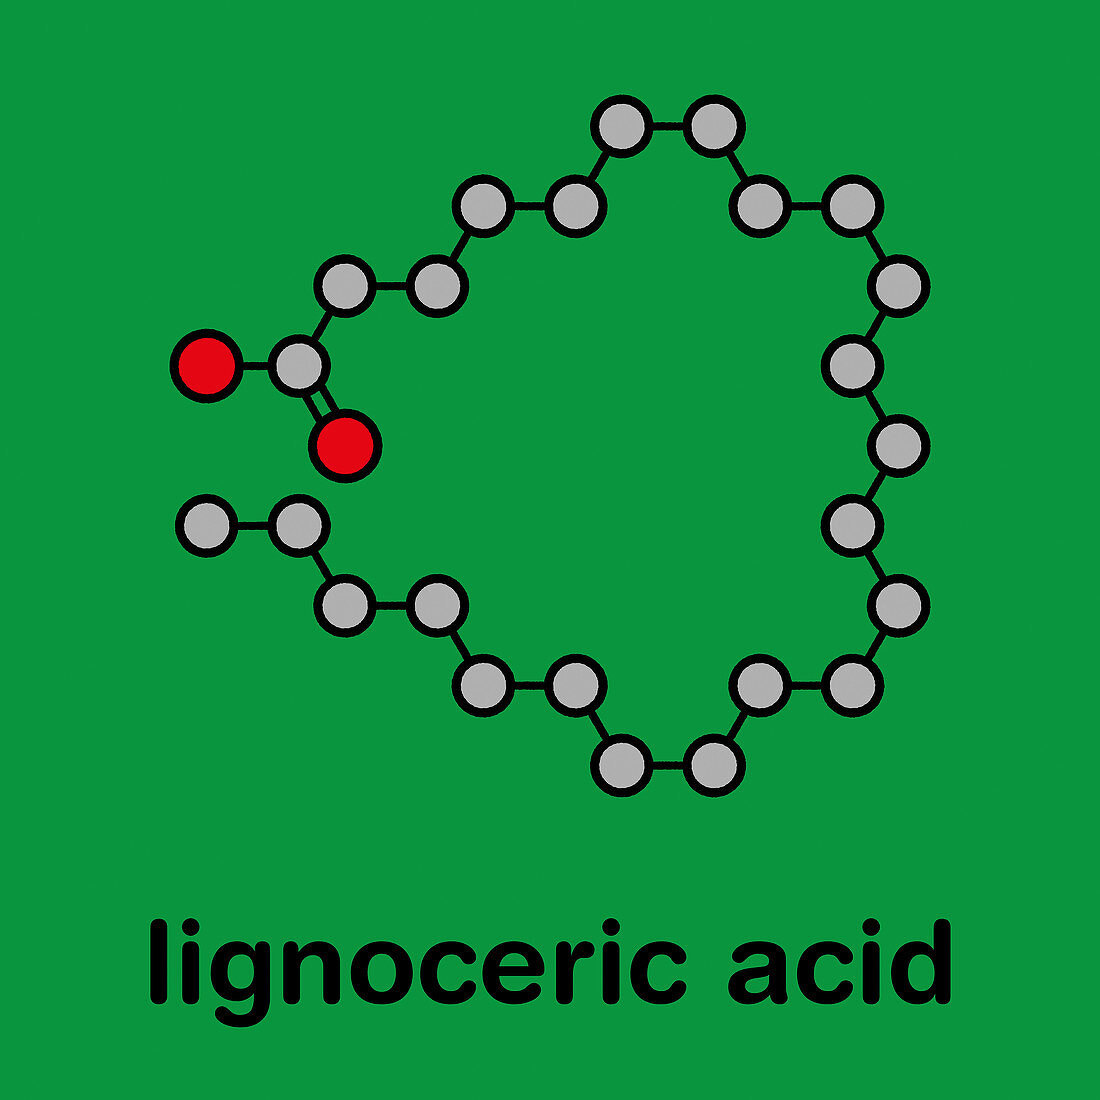 Lignoceric acid molecule